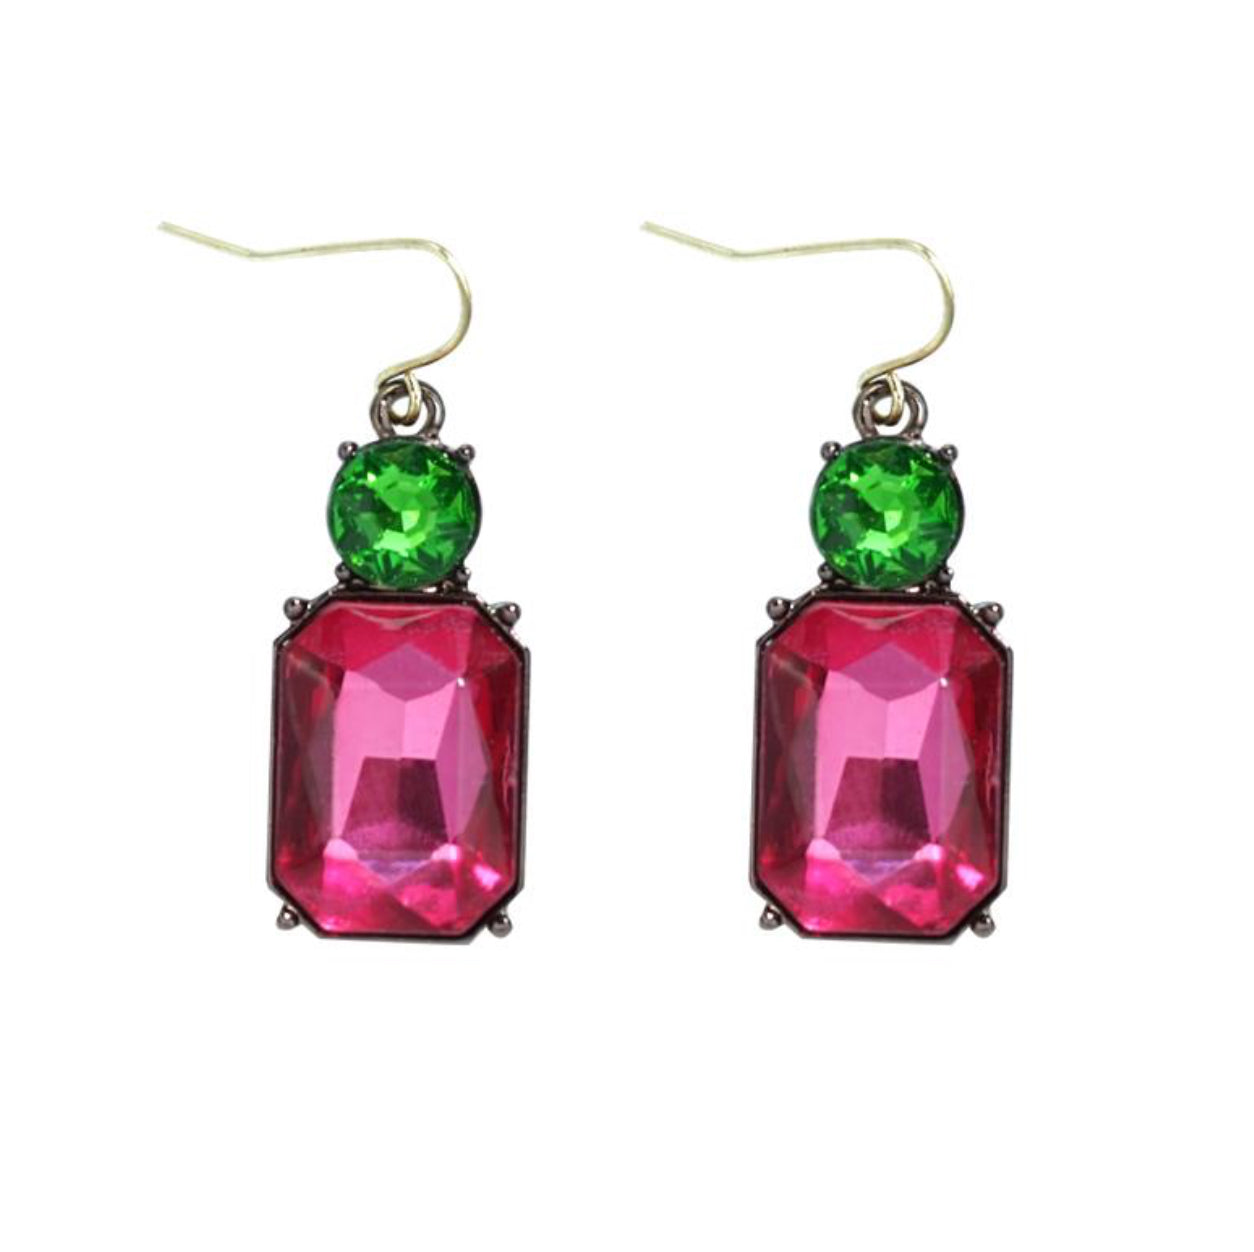 Twin gem hook earrings in hot pink & green